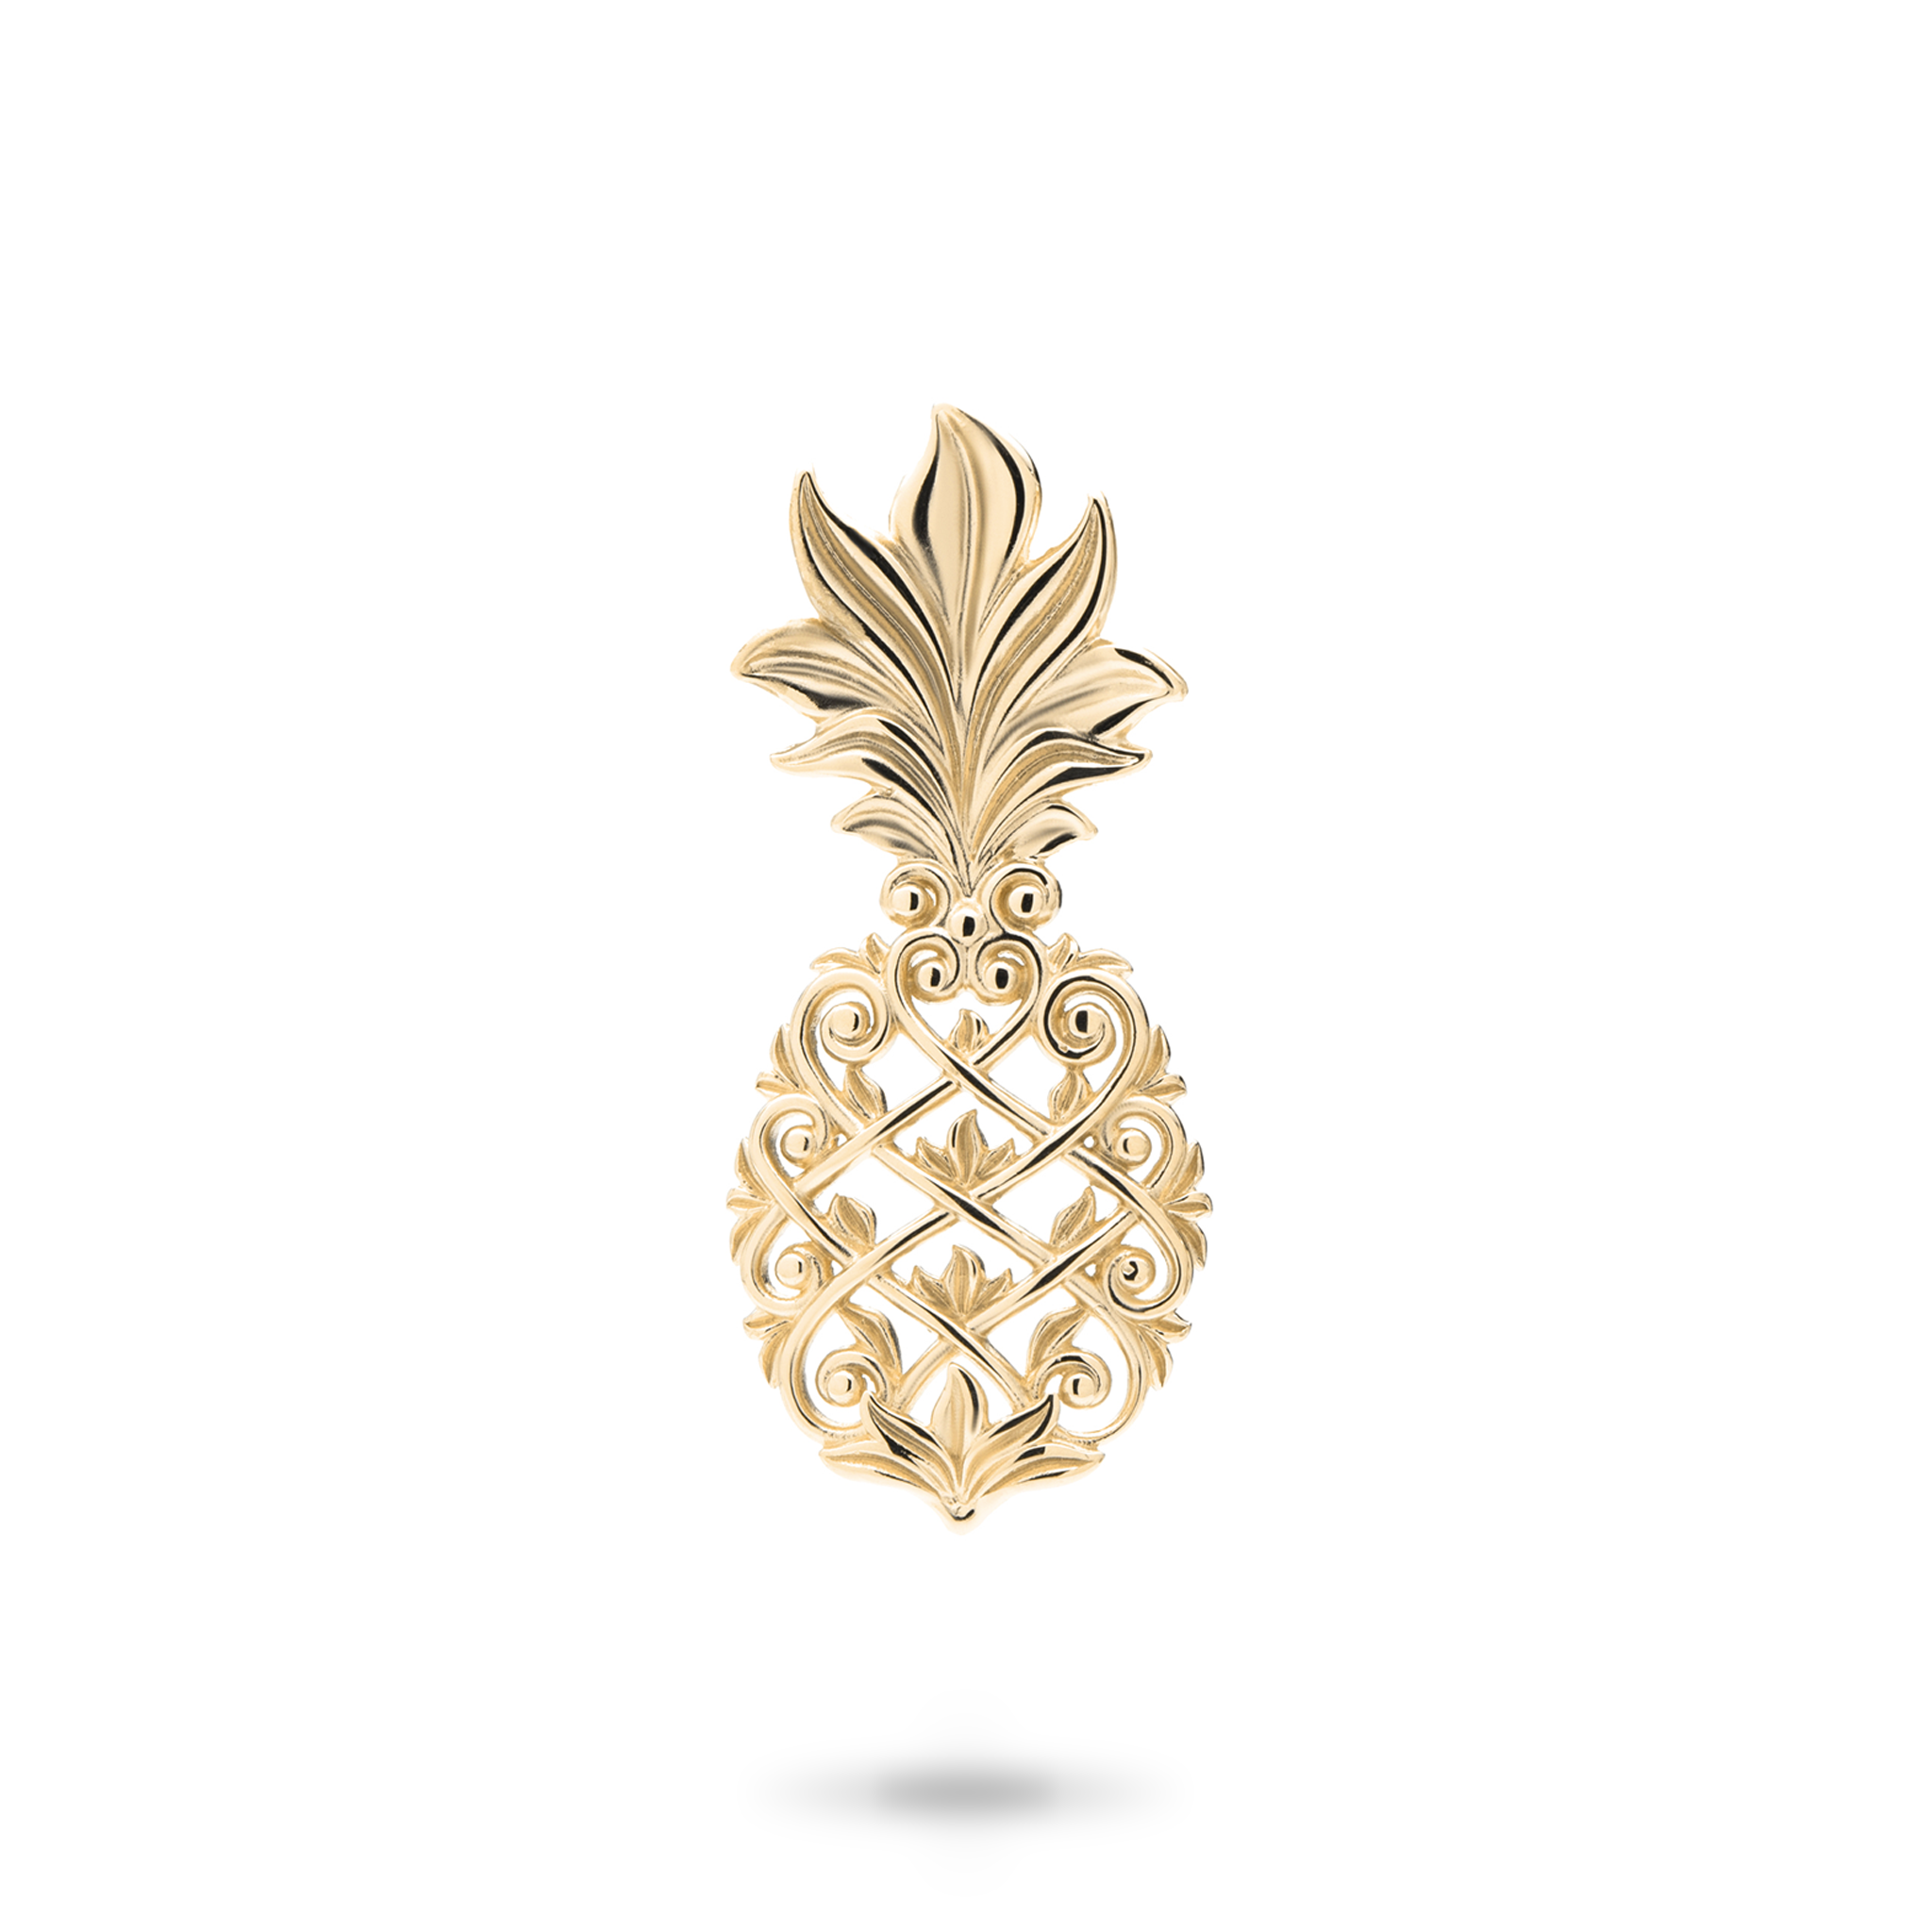 Living Heirloom Pineapple Pendant in Gold - 30mm